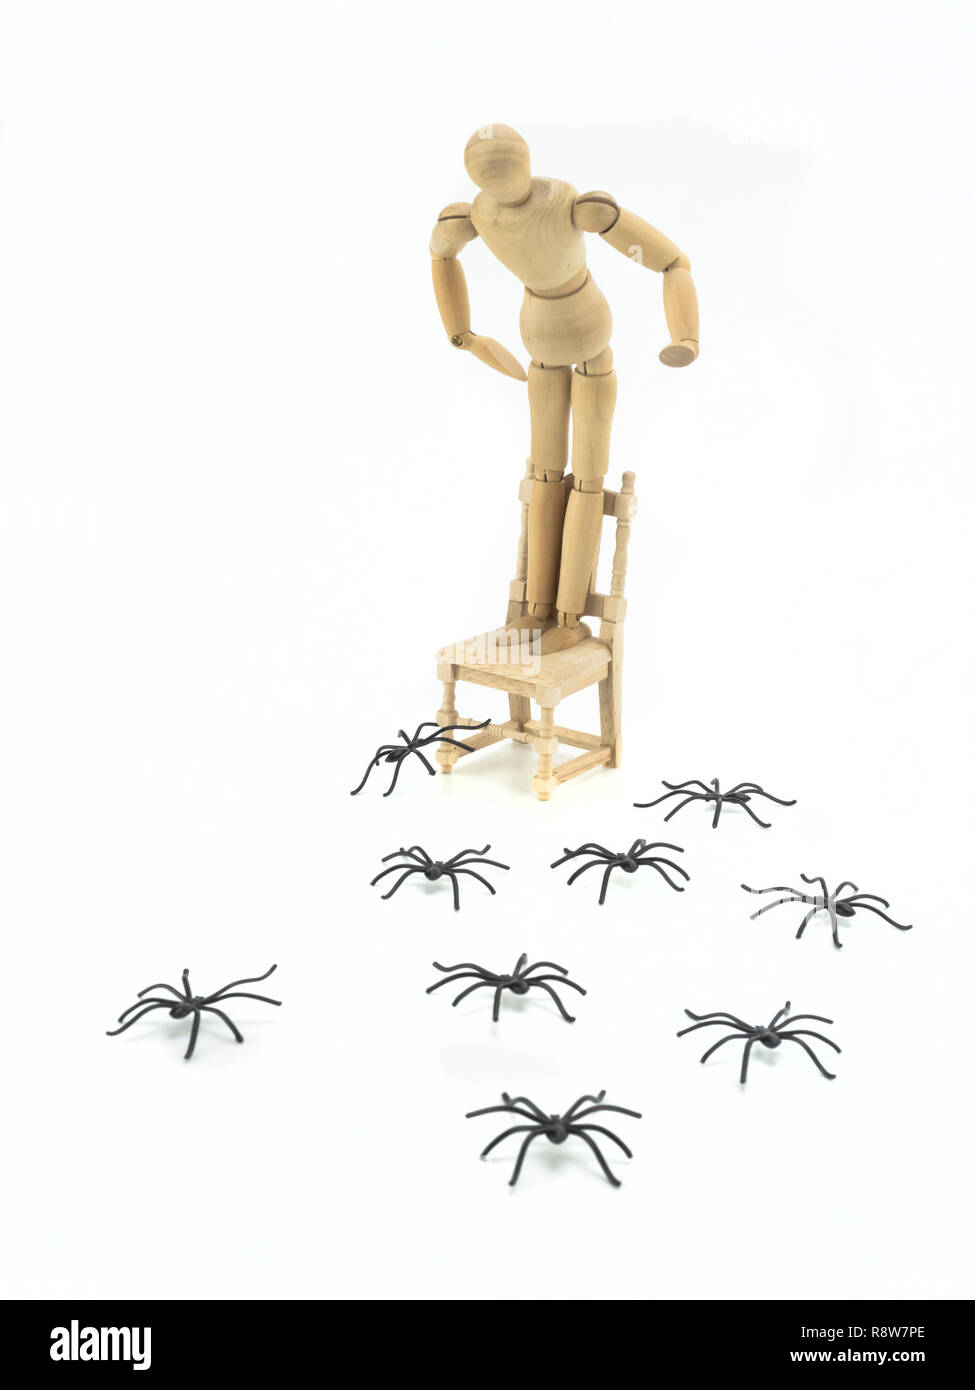 Holzpuppe hochgeladen Stuhl mit spider Phobia, konzeptionelle Bild Stockfoto